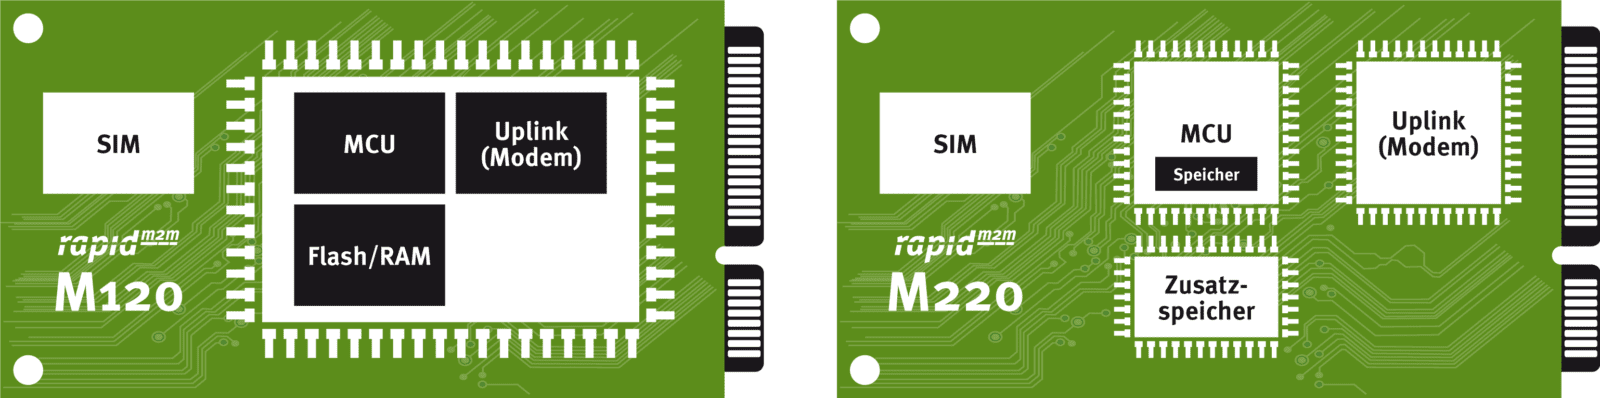 Comparison of rapidM2M M120 and rapidM2M M220 - family concept